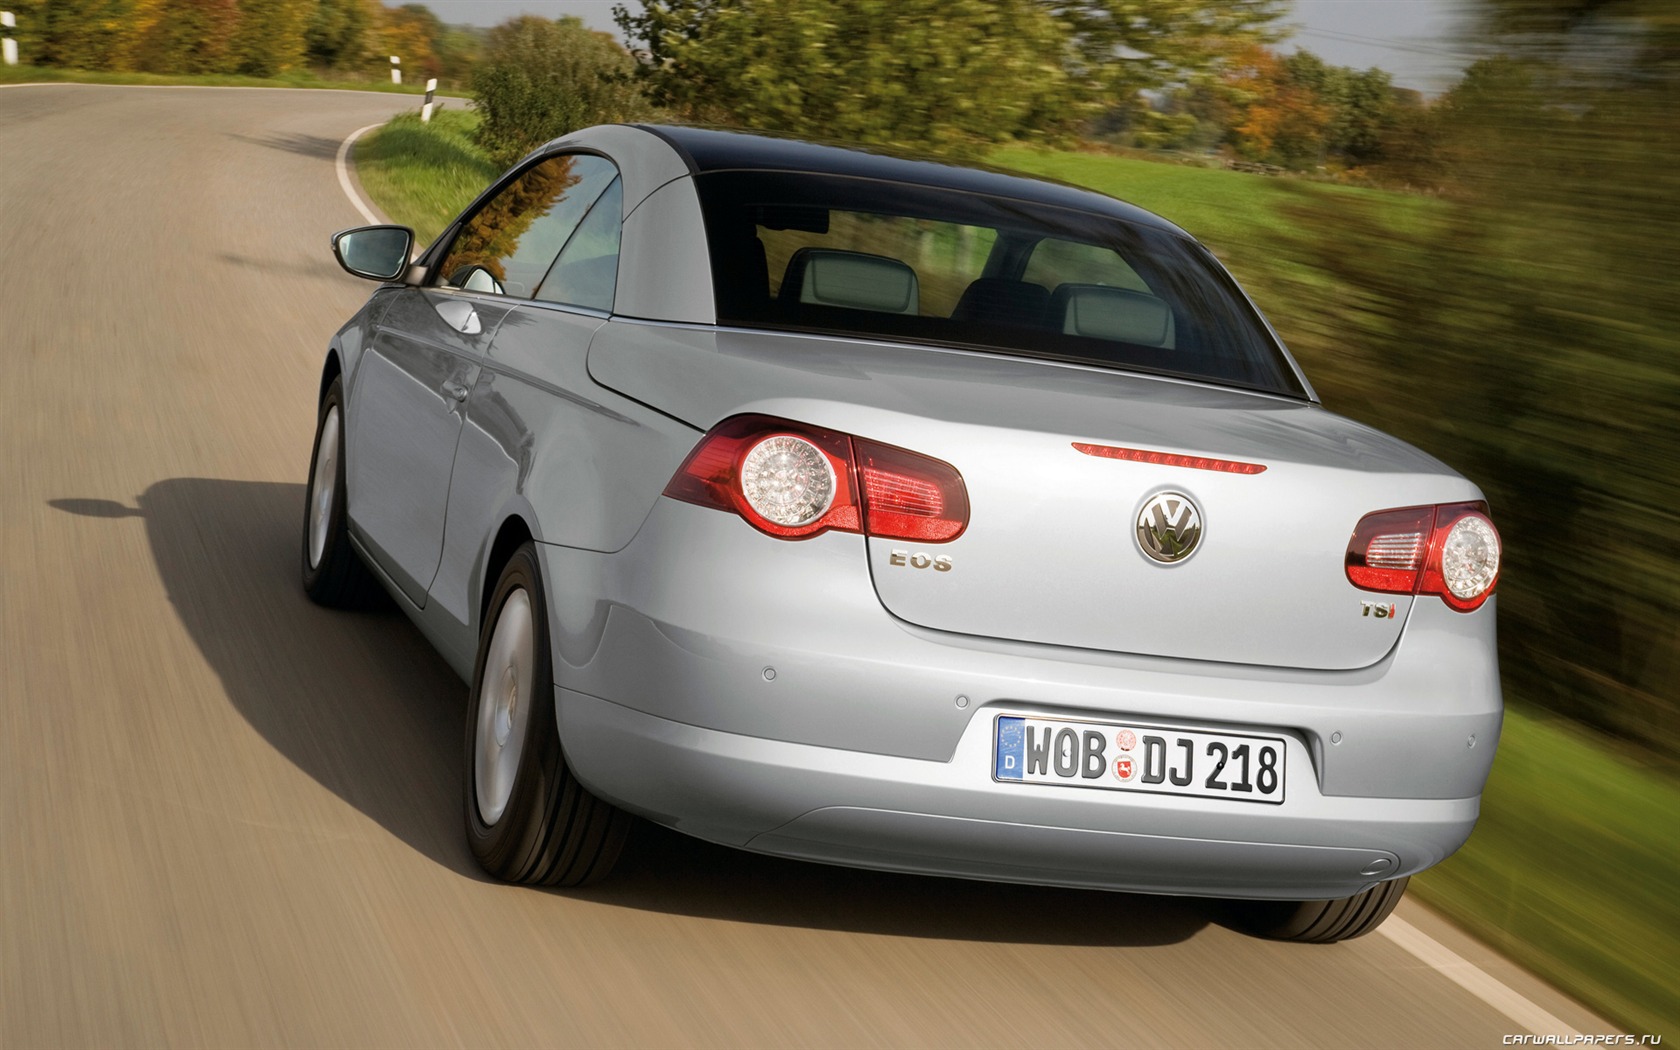 Volkswagen Eos - 2010 大众16 - 1680x1050